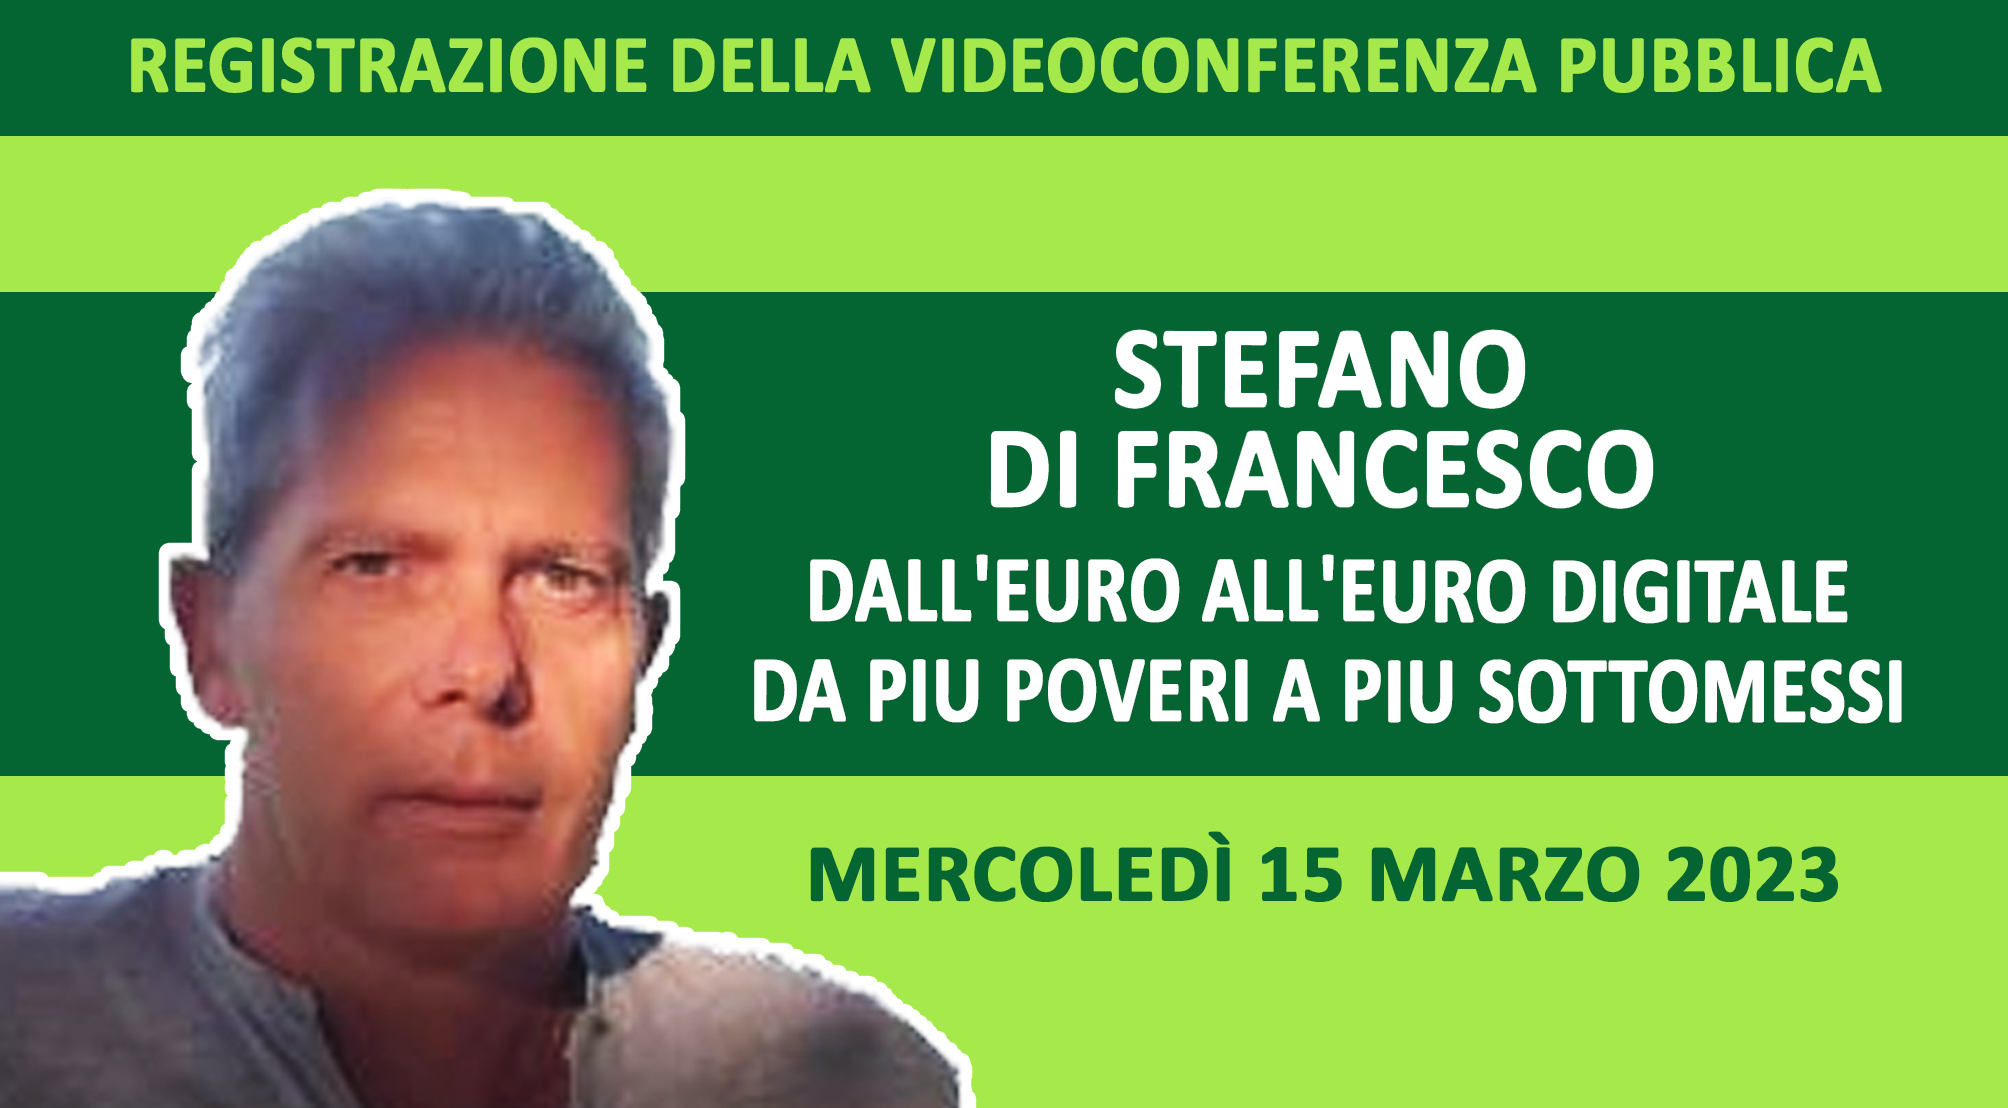 Registrazione della videoconferenza di STEFANO DI FRANCESCO su “Dall’euro all’euro digitale. Da più poveri a più sottomessi” (Mercoledì 15 marzo 2023)